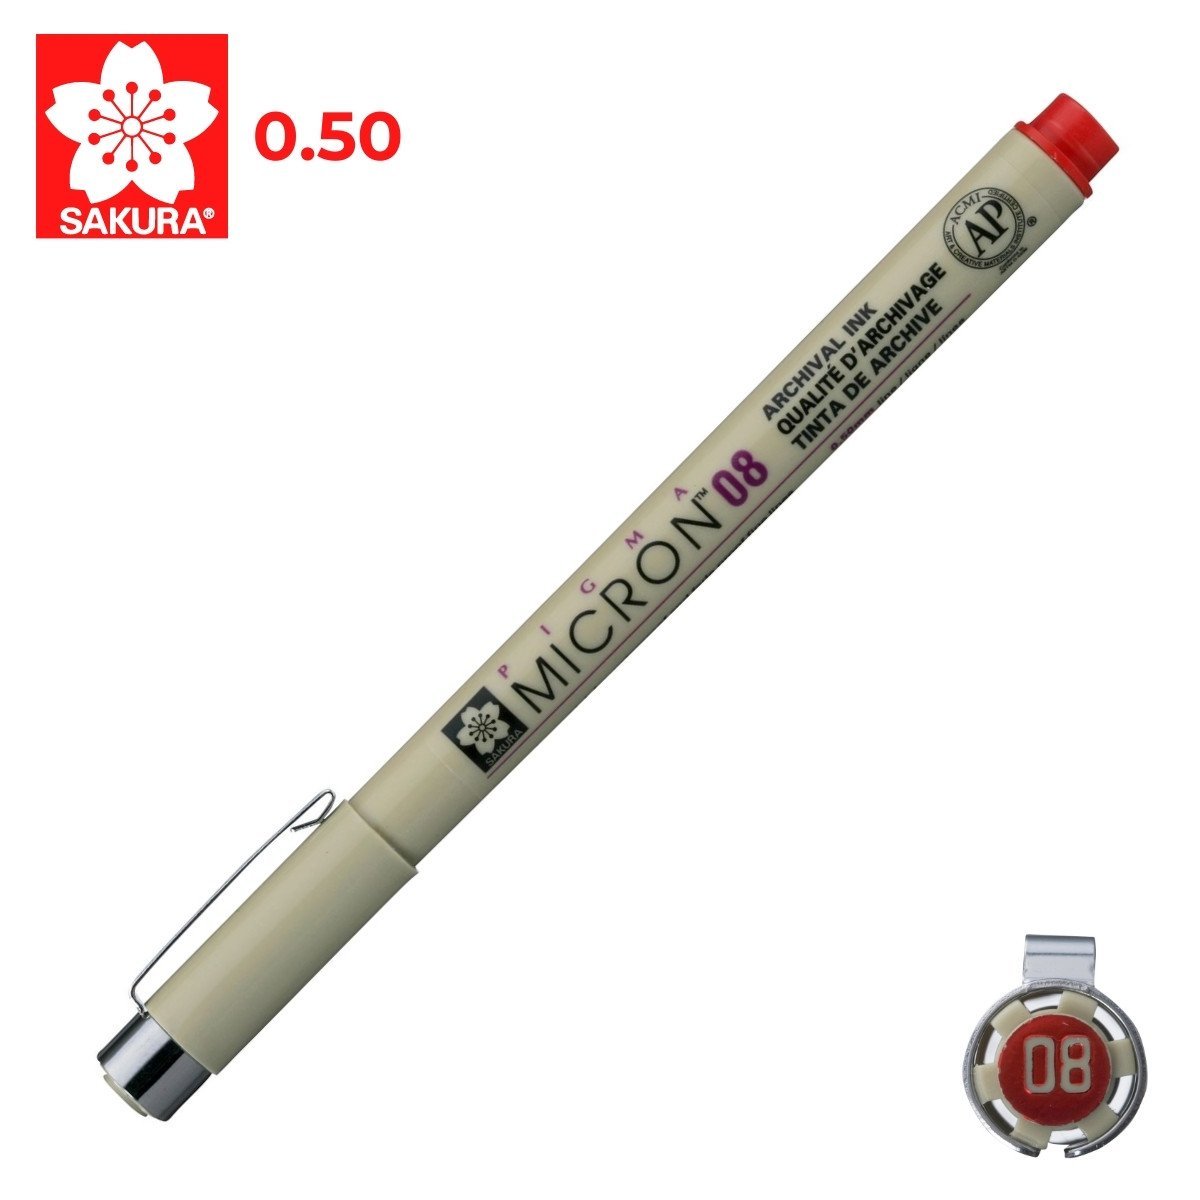 Sakura Pigma Micron Teknik Çizim Kalemi 08 0.5mm Kırmızı